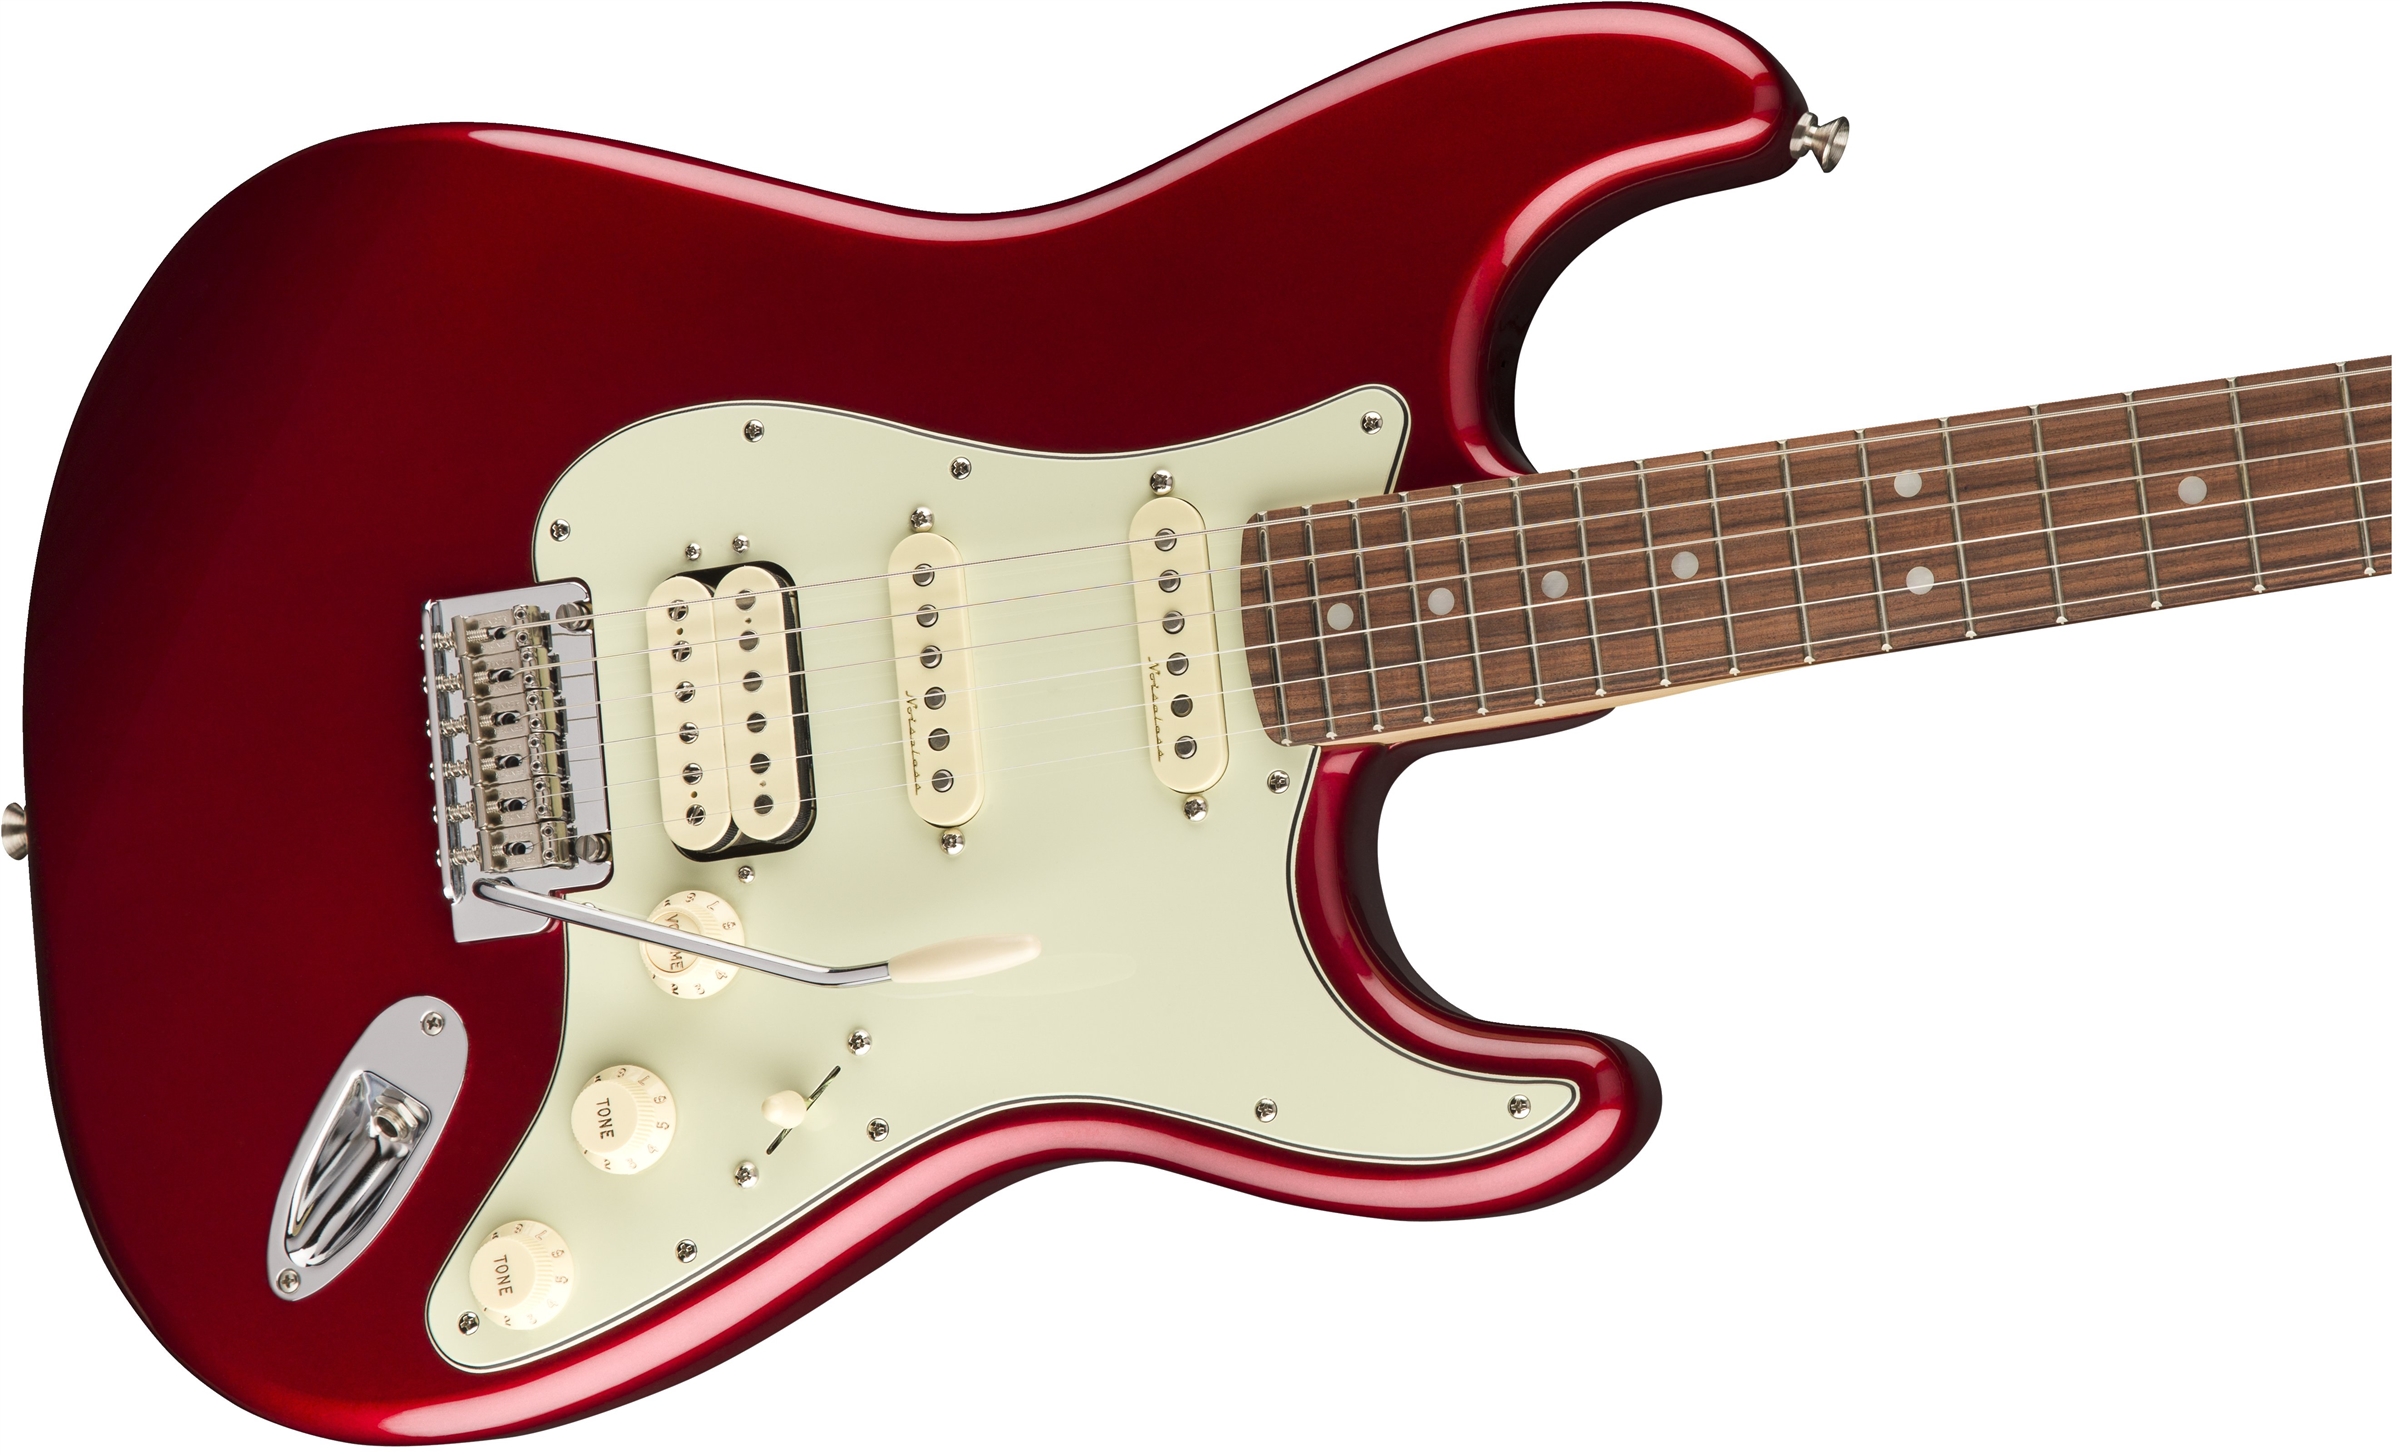 Fender Strat Deluxe Hss Mex Pf 2017 - Candy Apple Red - Elektrische gitaar in Str-vorm - Variation 2